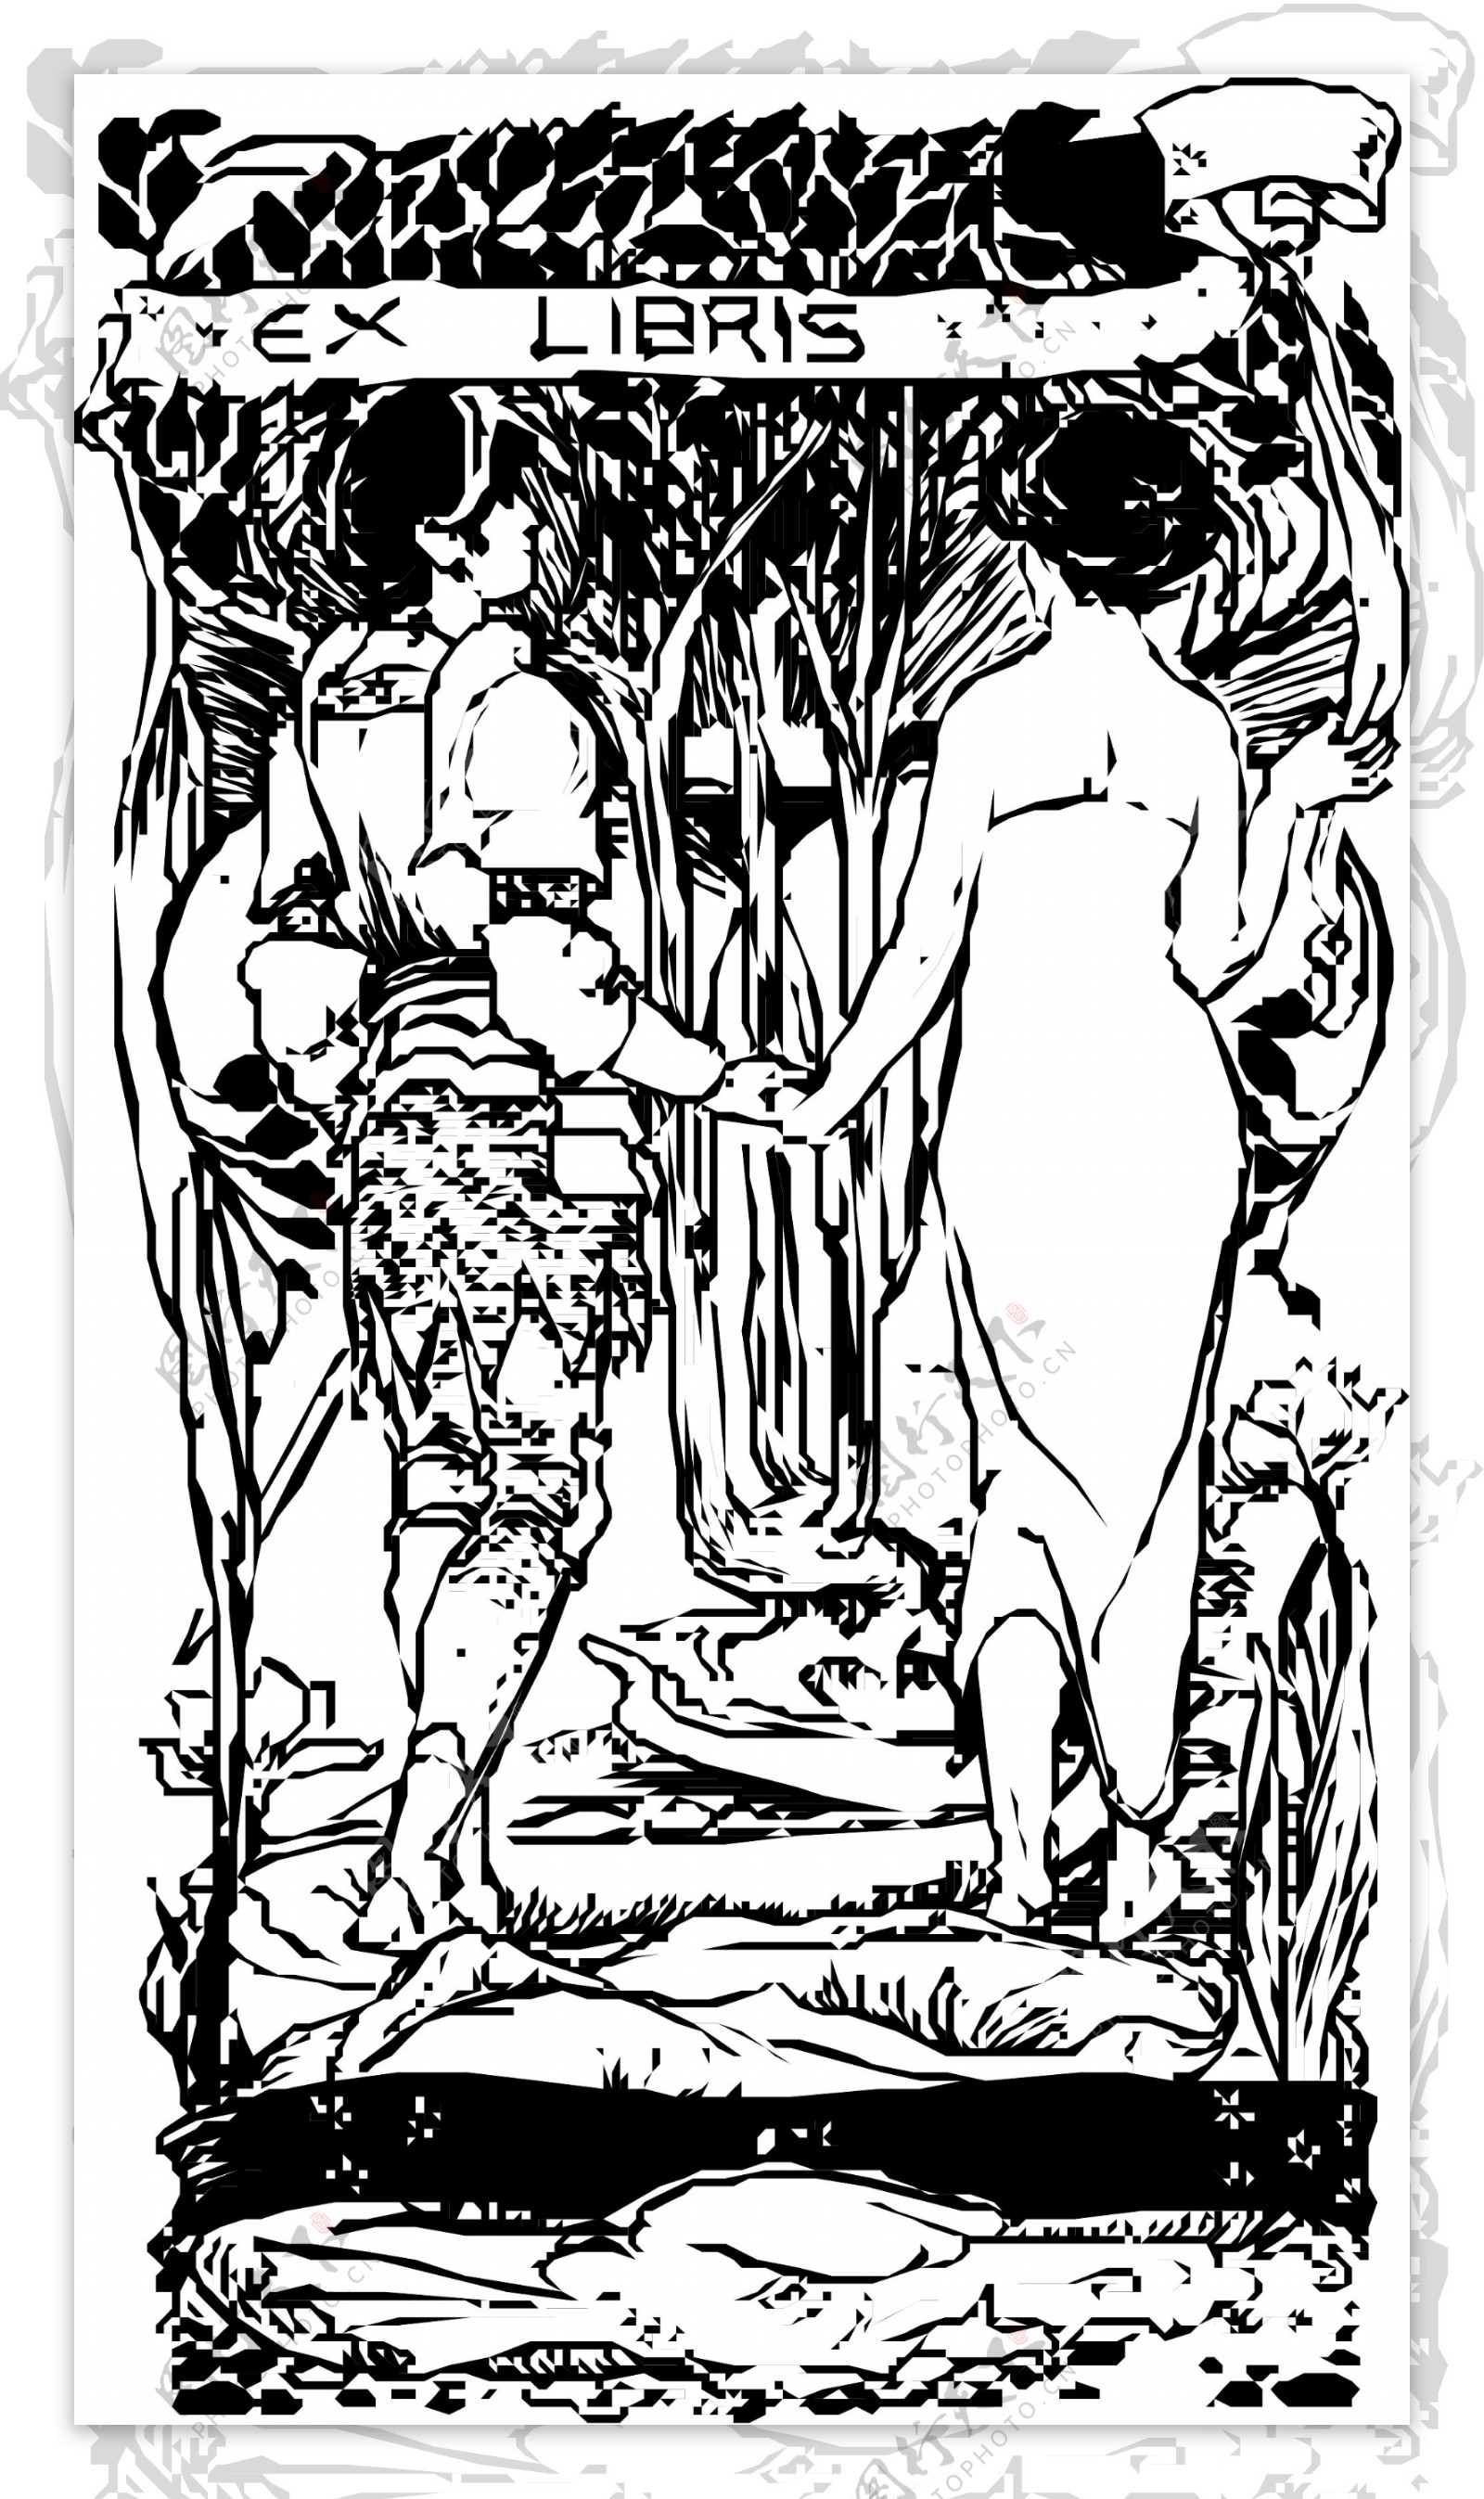 两个女人在森林里散步的图案